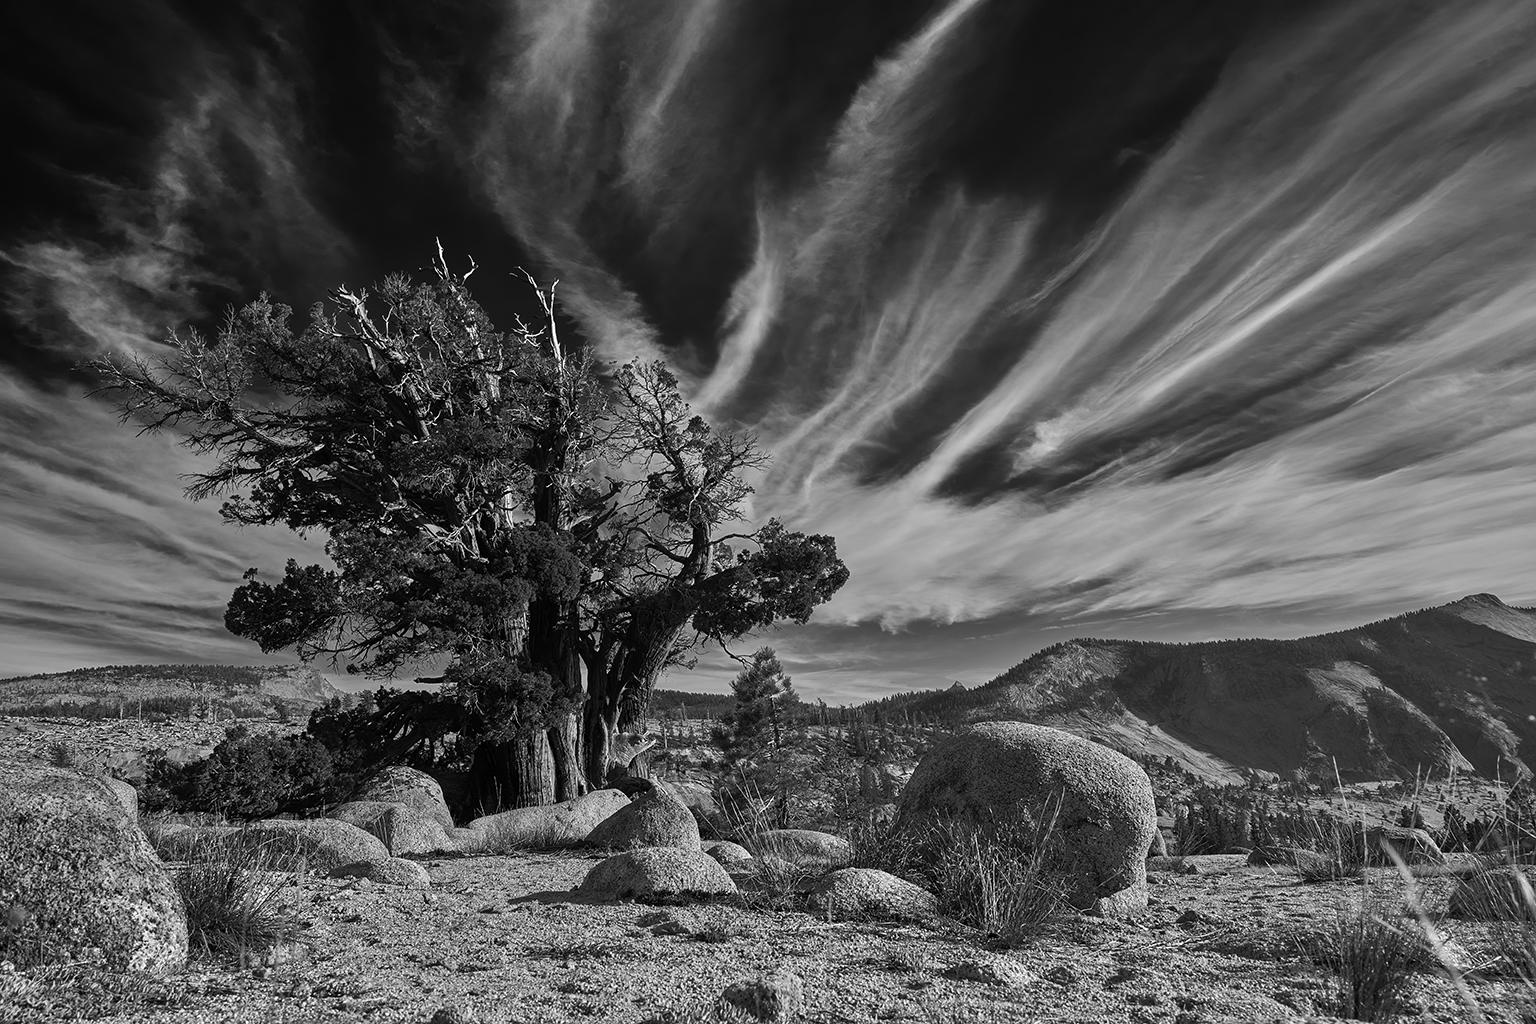 Tree Study III – Großformatige b/w-Fotografie eines einsamen antiken Baumes in Landschaft